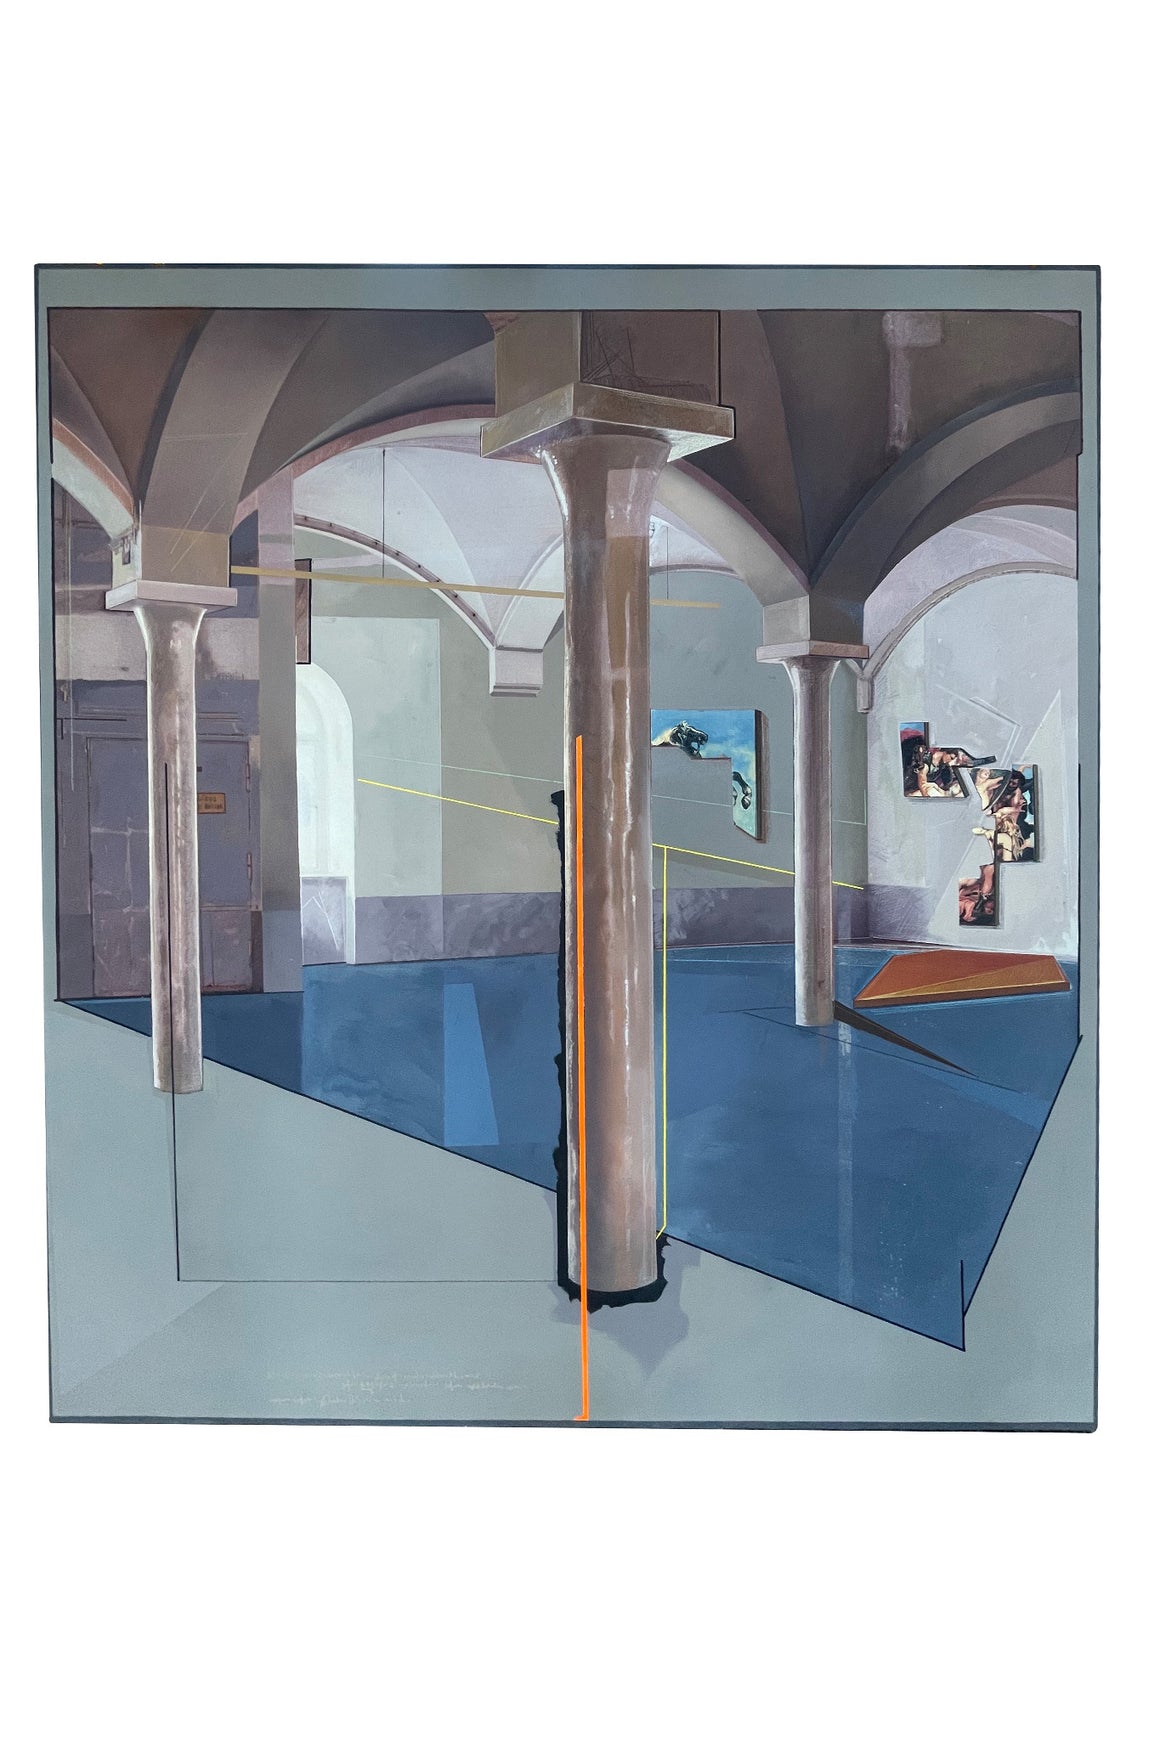 “Installazione Rotazione a Destre”, Surrealist Painting by Andrea Vizzini - ON HOLD